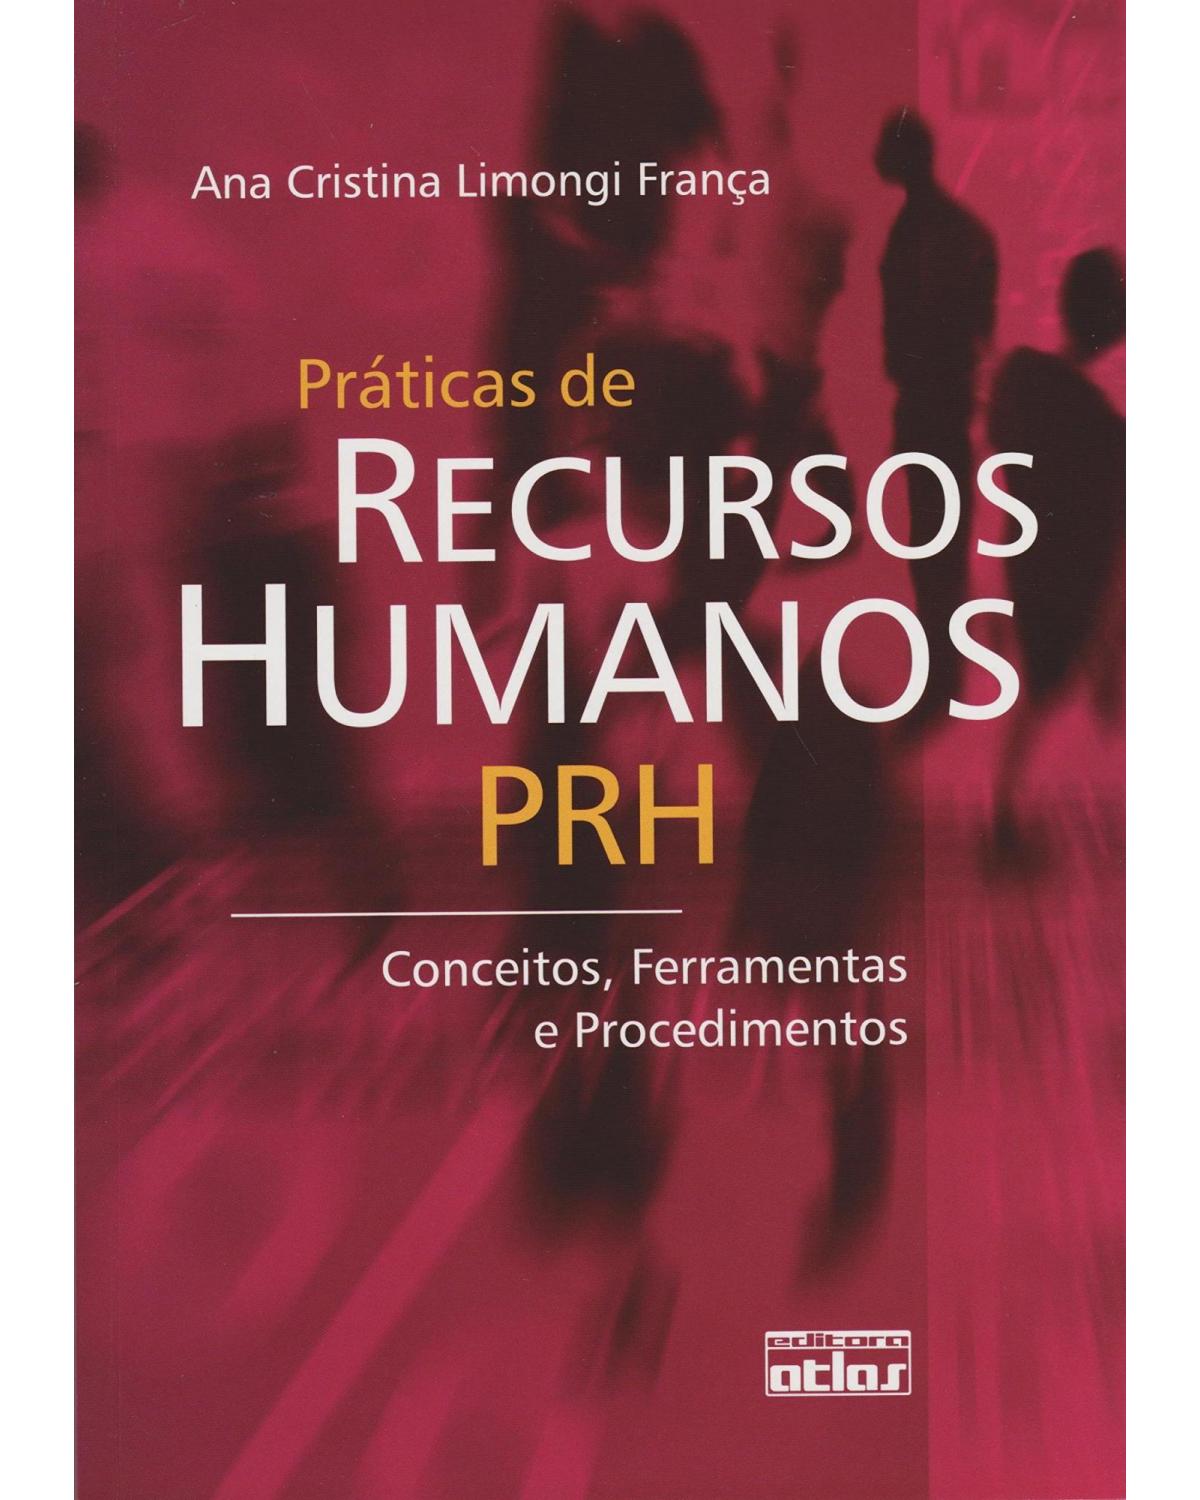 Práticas de recursos humanos - PRH - Conceitos, ferramentas e procedimentos - 1ª Edição | 2007